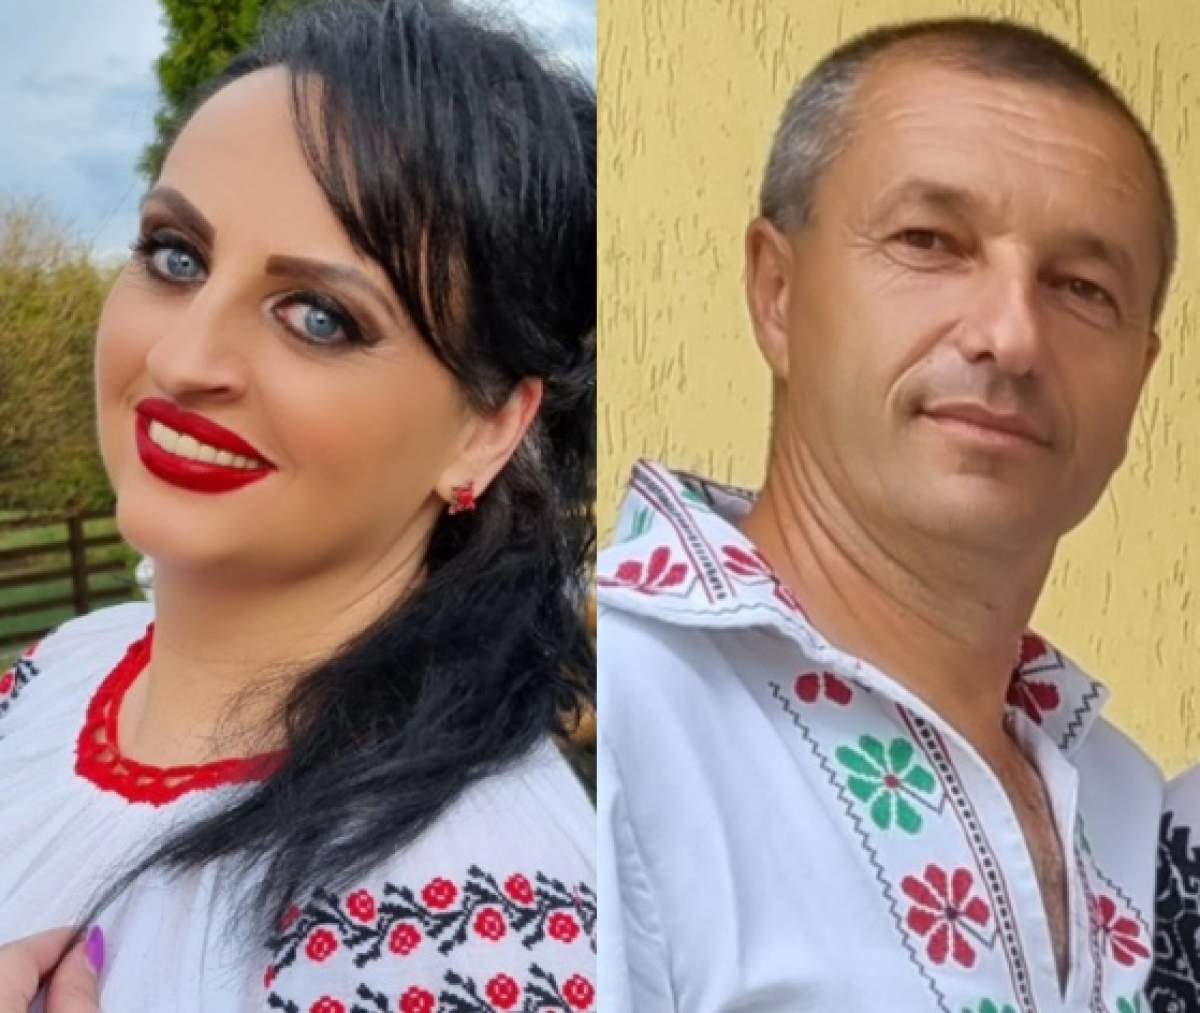 Interpreta Biatrice Duca și-a pierdut soțul în accidentul de la Iași. Artista nu își poate reveni: ”Cu sufletul sfâșiat de durere...”